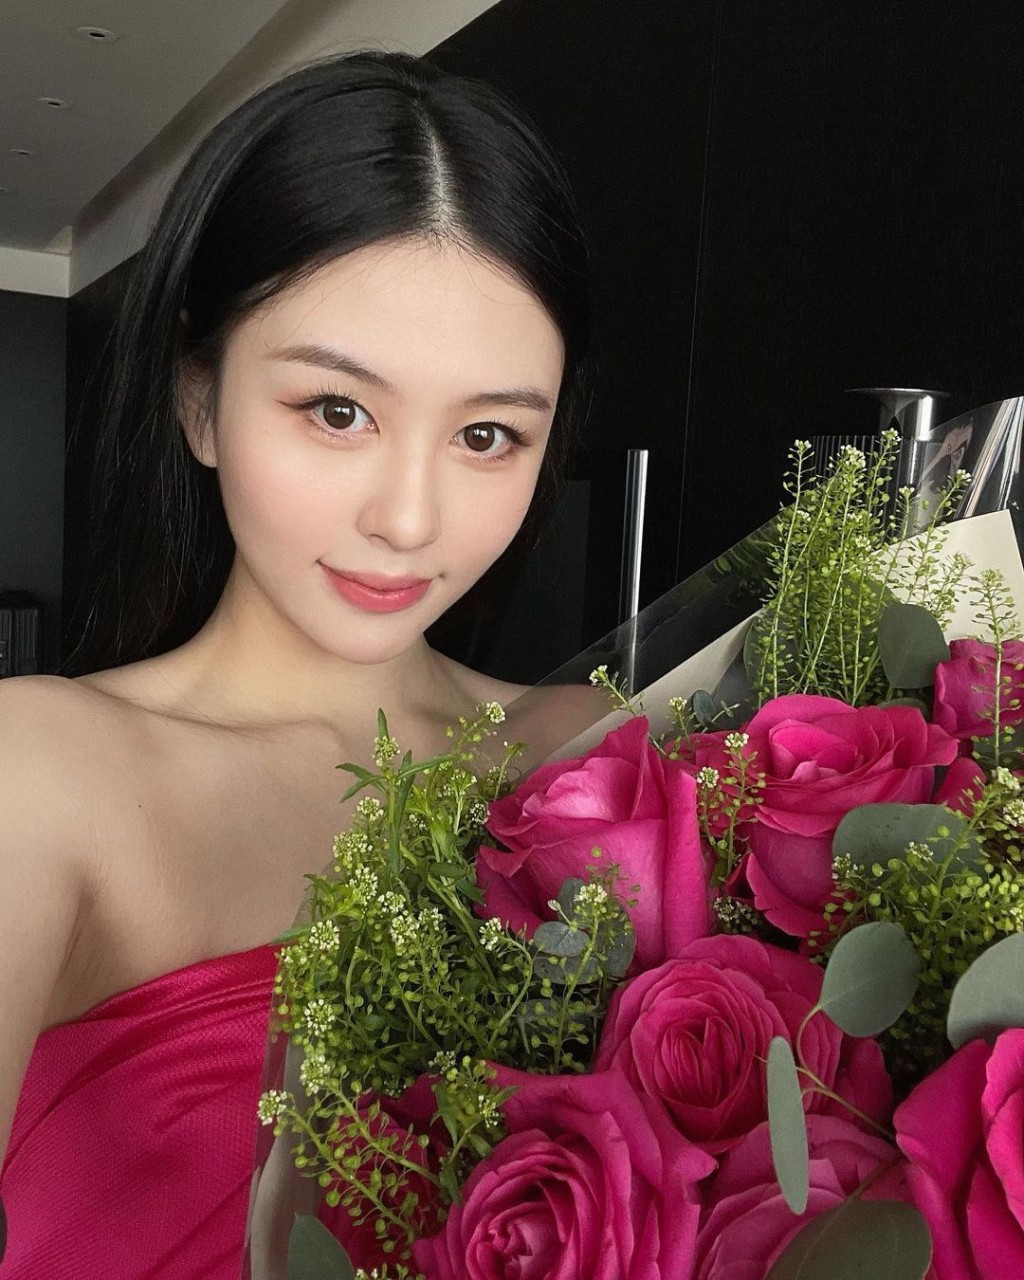 沈月昨日（16日）分享捧着大束粉紅玫瑰的照片，相中的她亦配合花束穿上粉紅色衣服，顏色非常搶眼。